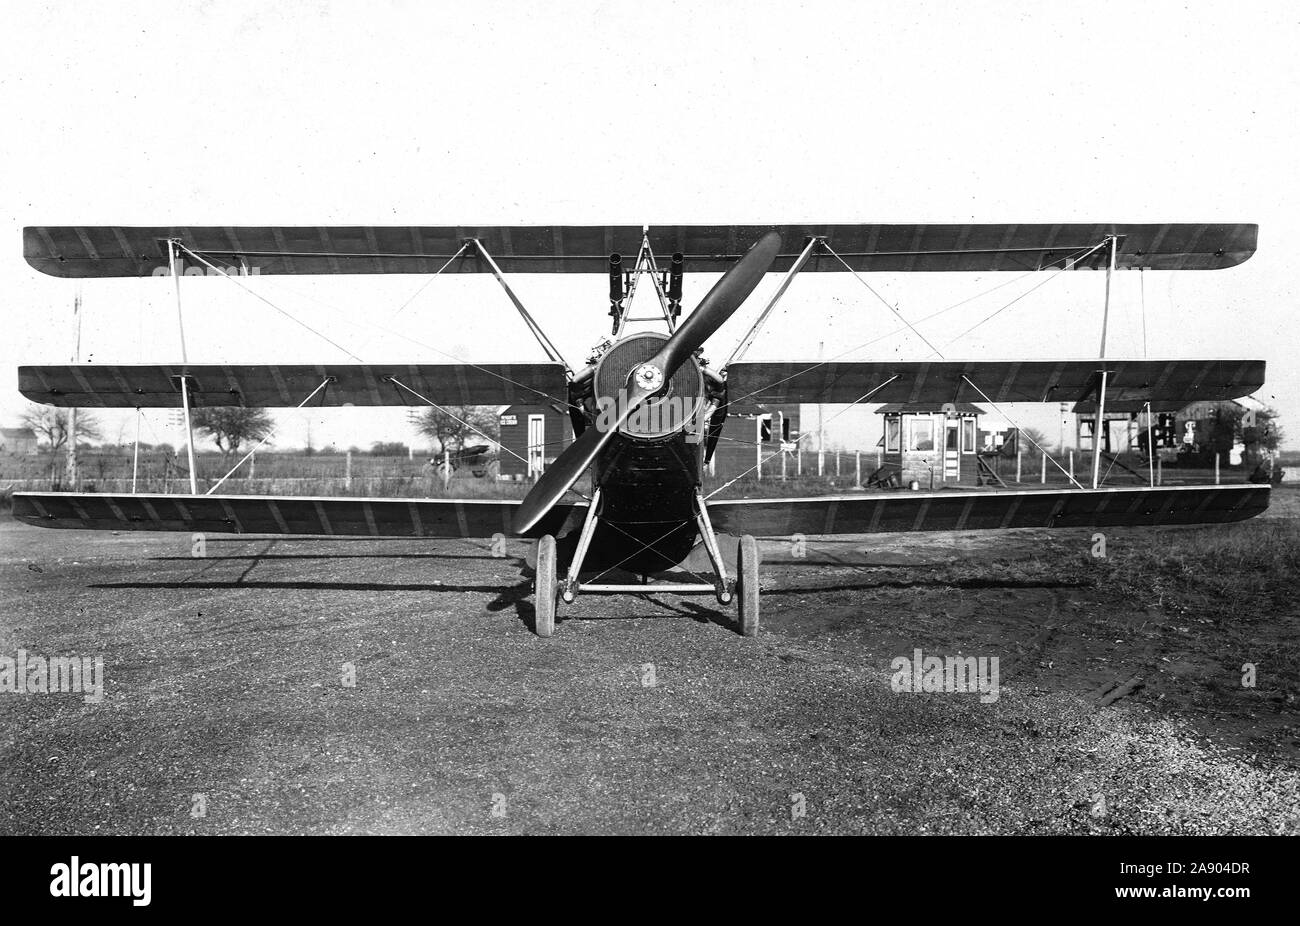 1918 - Curtiss Flugzeug & Motor Corporation, Buffalo, N.Y. Dreidecker mit Maschinengewehren montiert Stockfoto